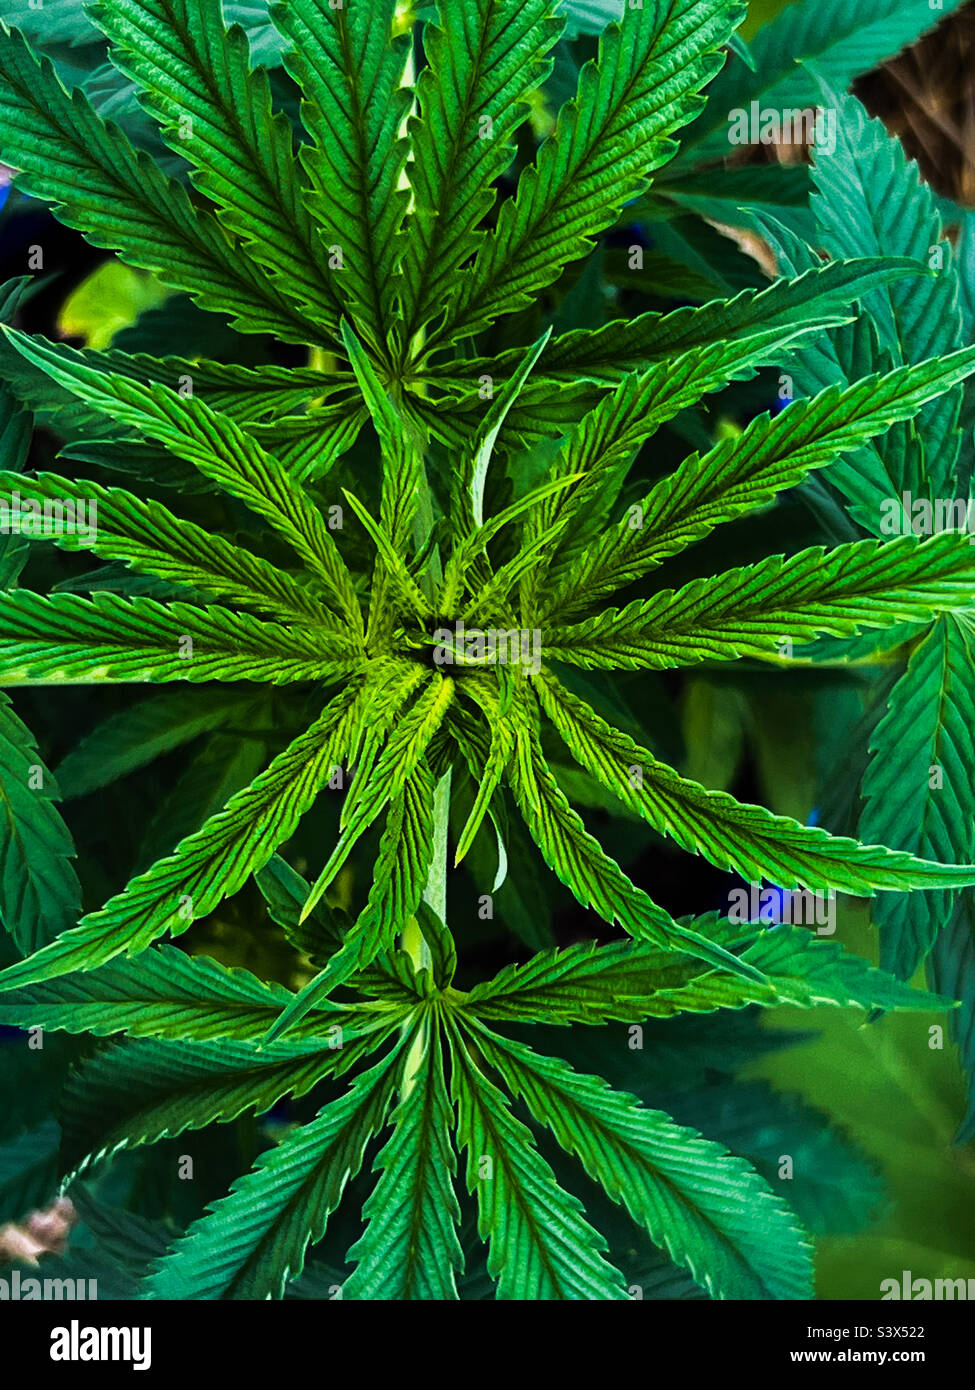 Eine Ansicht von oben über die Symmetrie einer Cannabispflanze. Dieser Marihuana-Klon wächst in einem Hinterhofgarten in Maine neben Kürbis und Erbsen. Maine hat sowohl die Freizeit- als auch die medizinische Verwendung legalisiert. Stockfoto